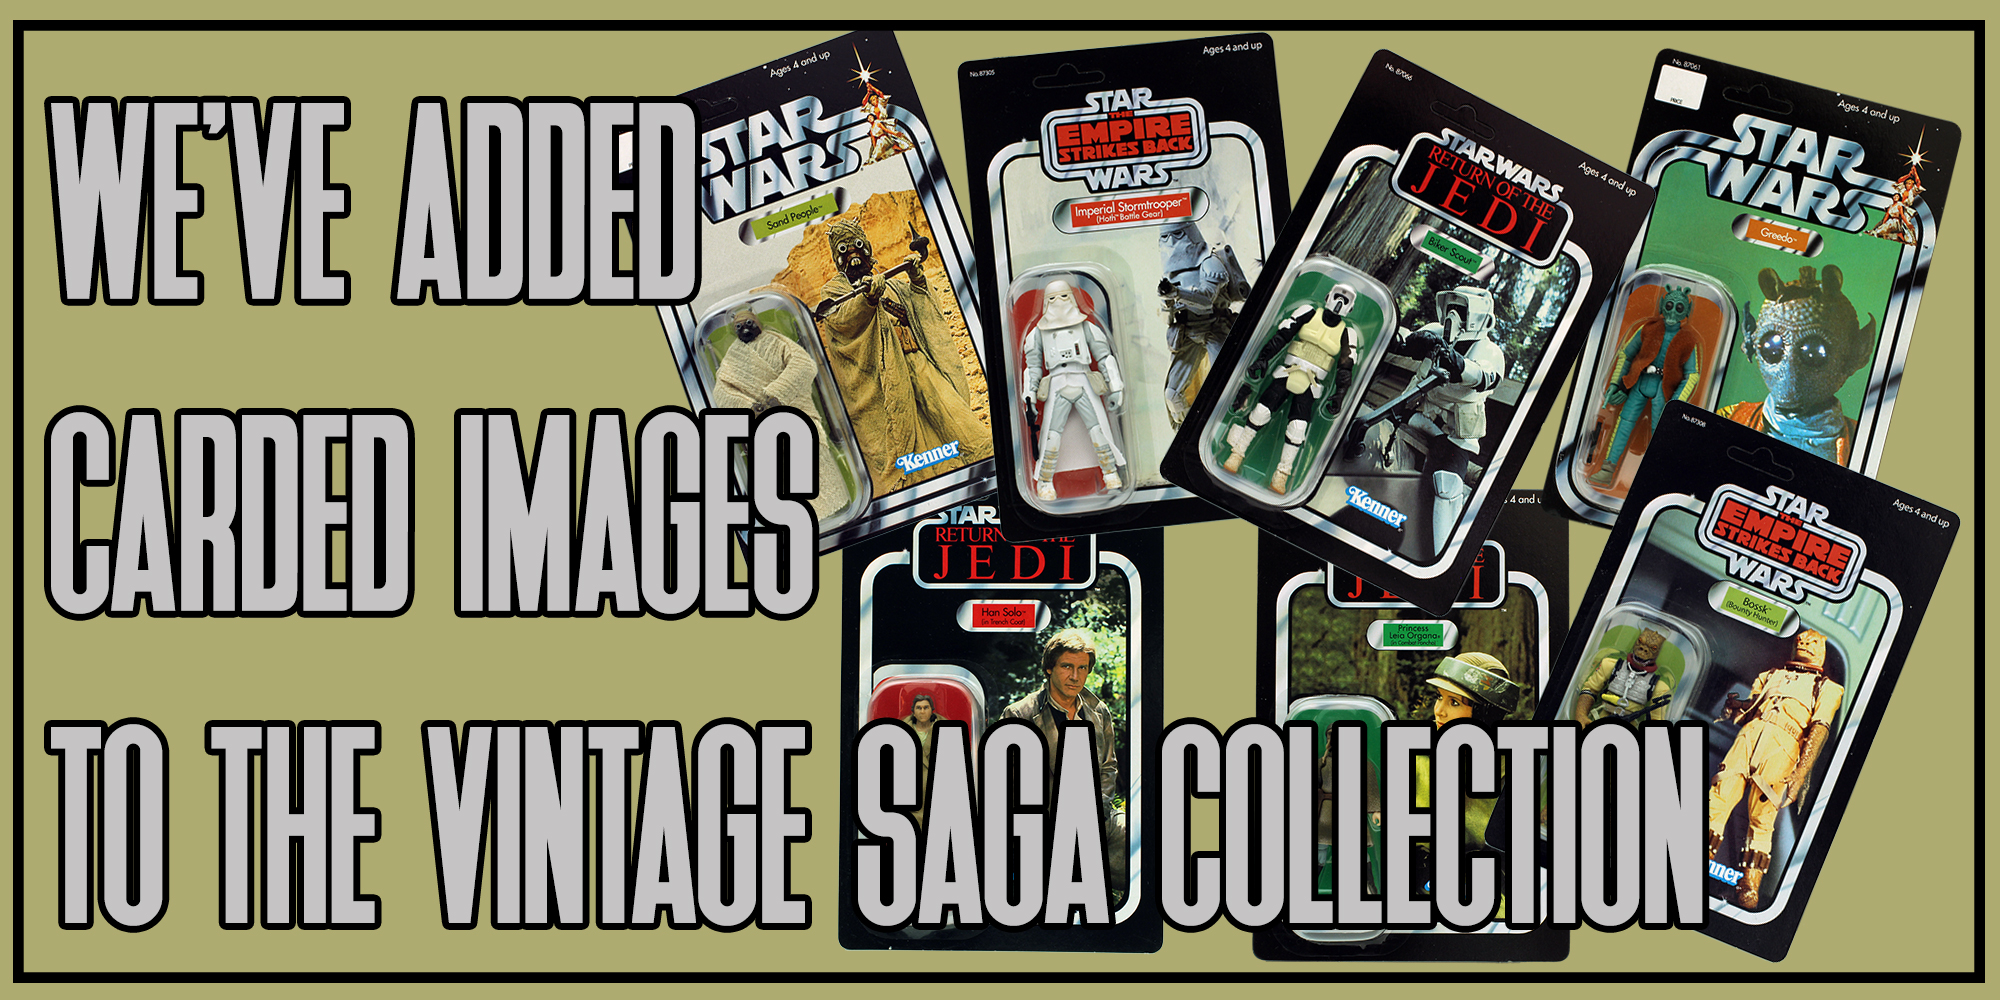 The Vintage SAGA Collection